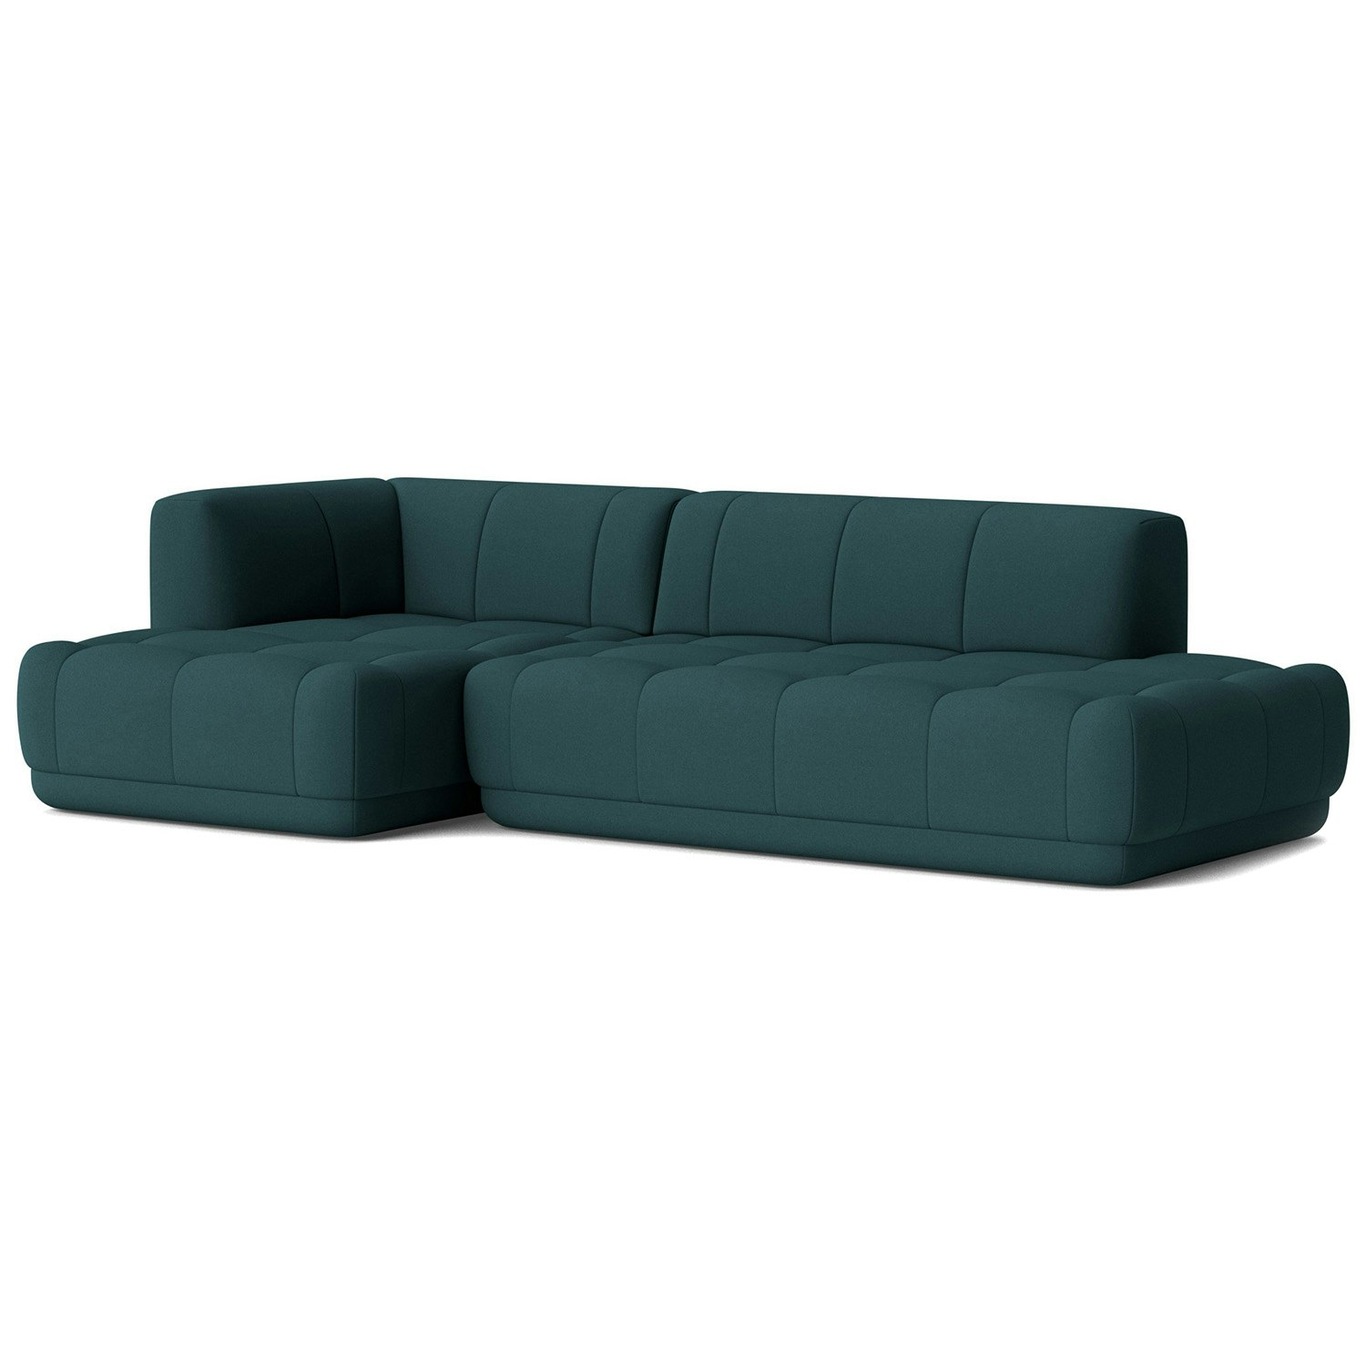 Quilton 3.5-Seater Sofa Configuration 21 Left, Divina 886